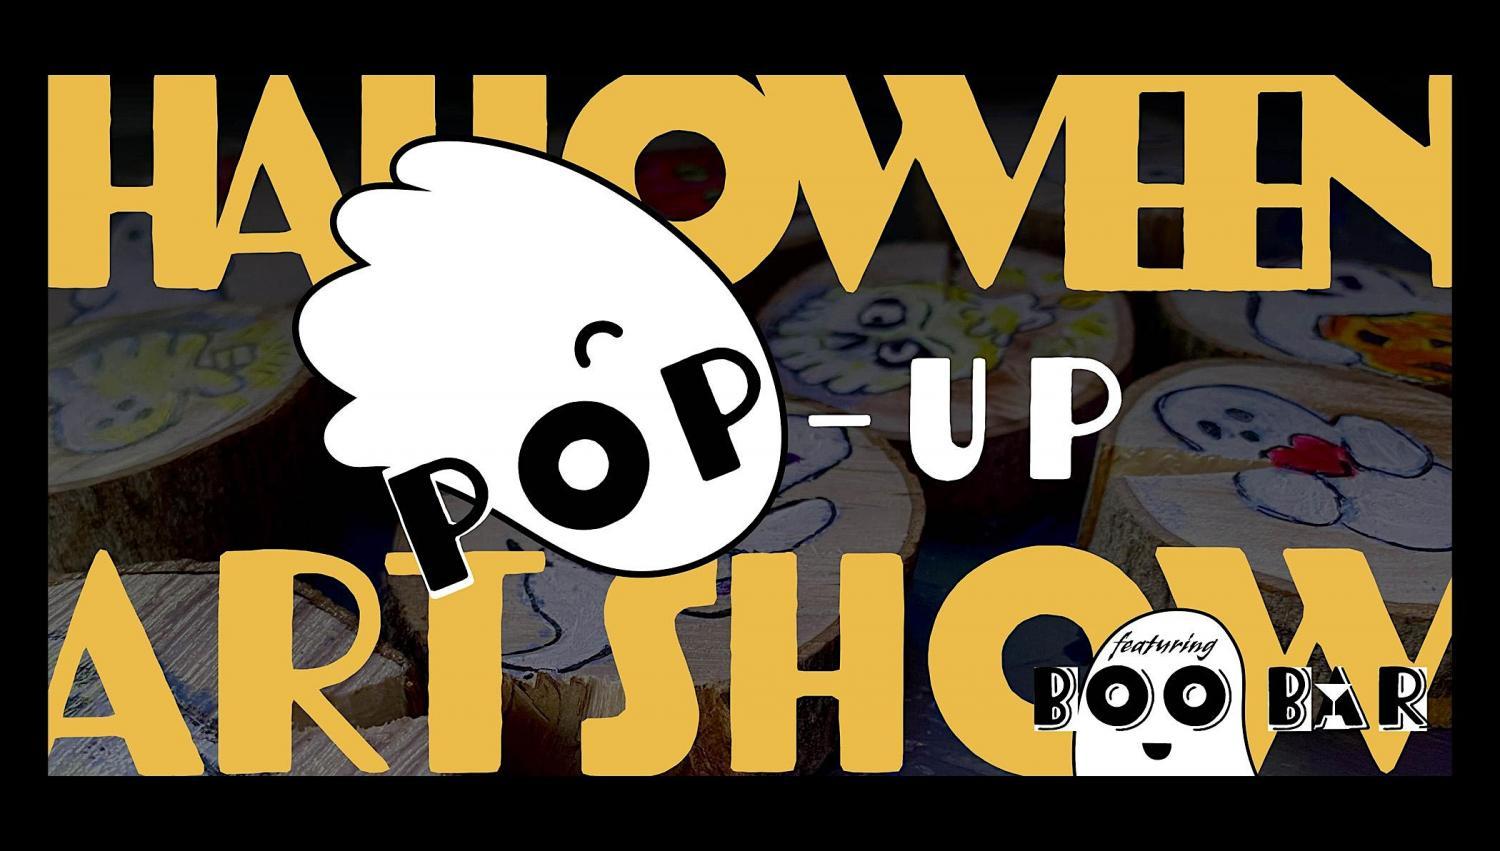 Halloween Pop-Up Art Show
Sun Oct 23, 7:00 PM - Sun Oct 23, 7:00 PM
in 3 days